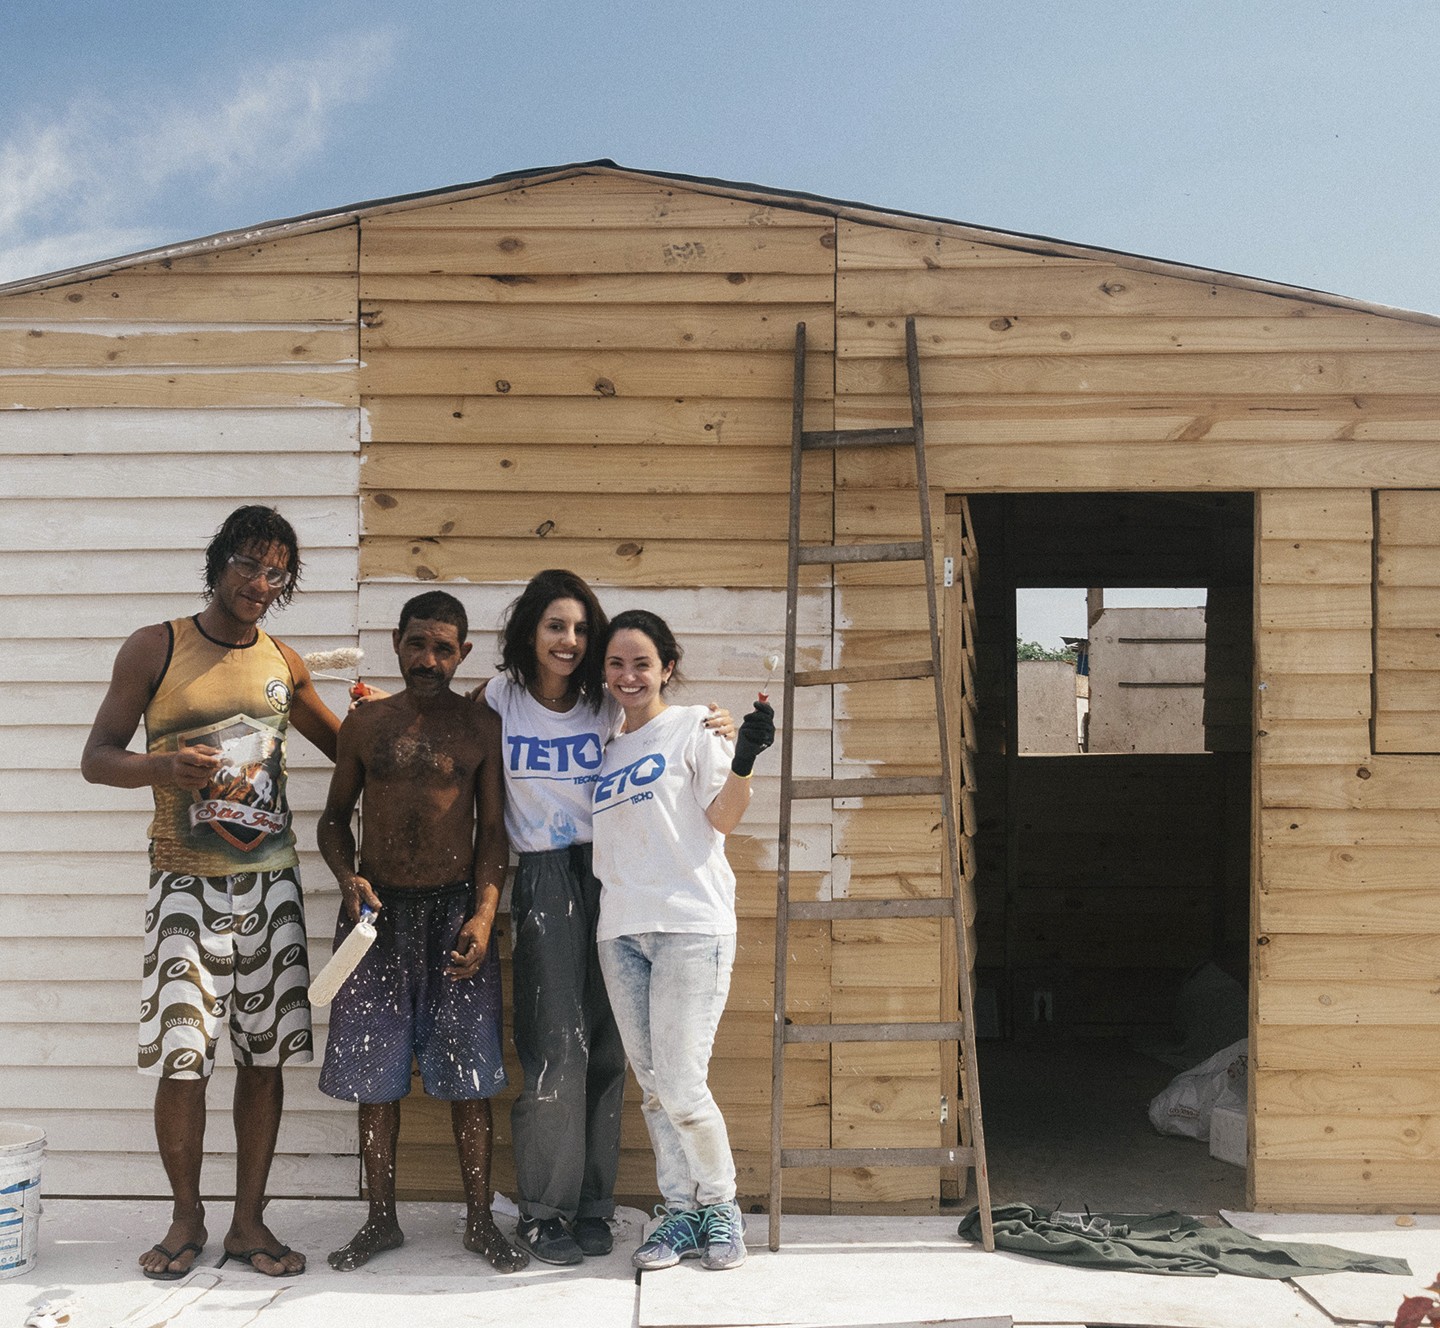 Conheça a Teto, ONG que constroi casas emergenciais e oferece autonomia para comunidades informais (Foto: Teto Brasil/divulgação)